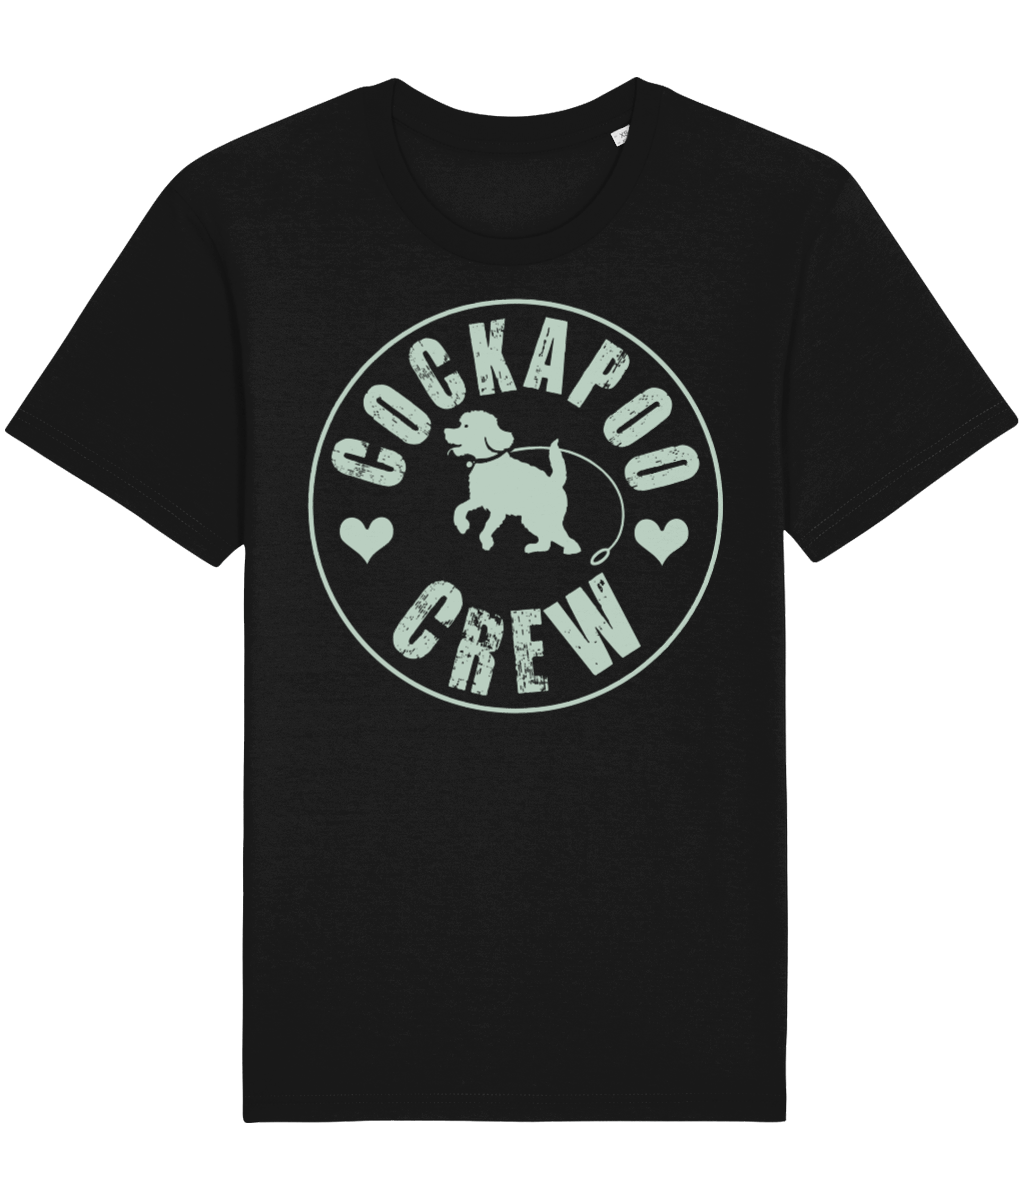 Black cockapoo crew t-shirt